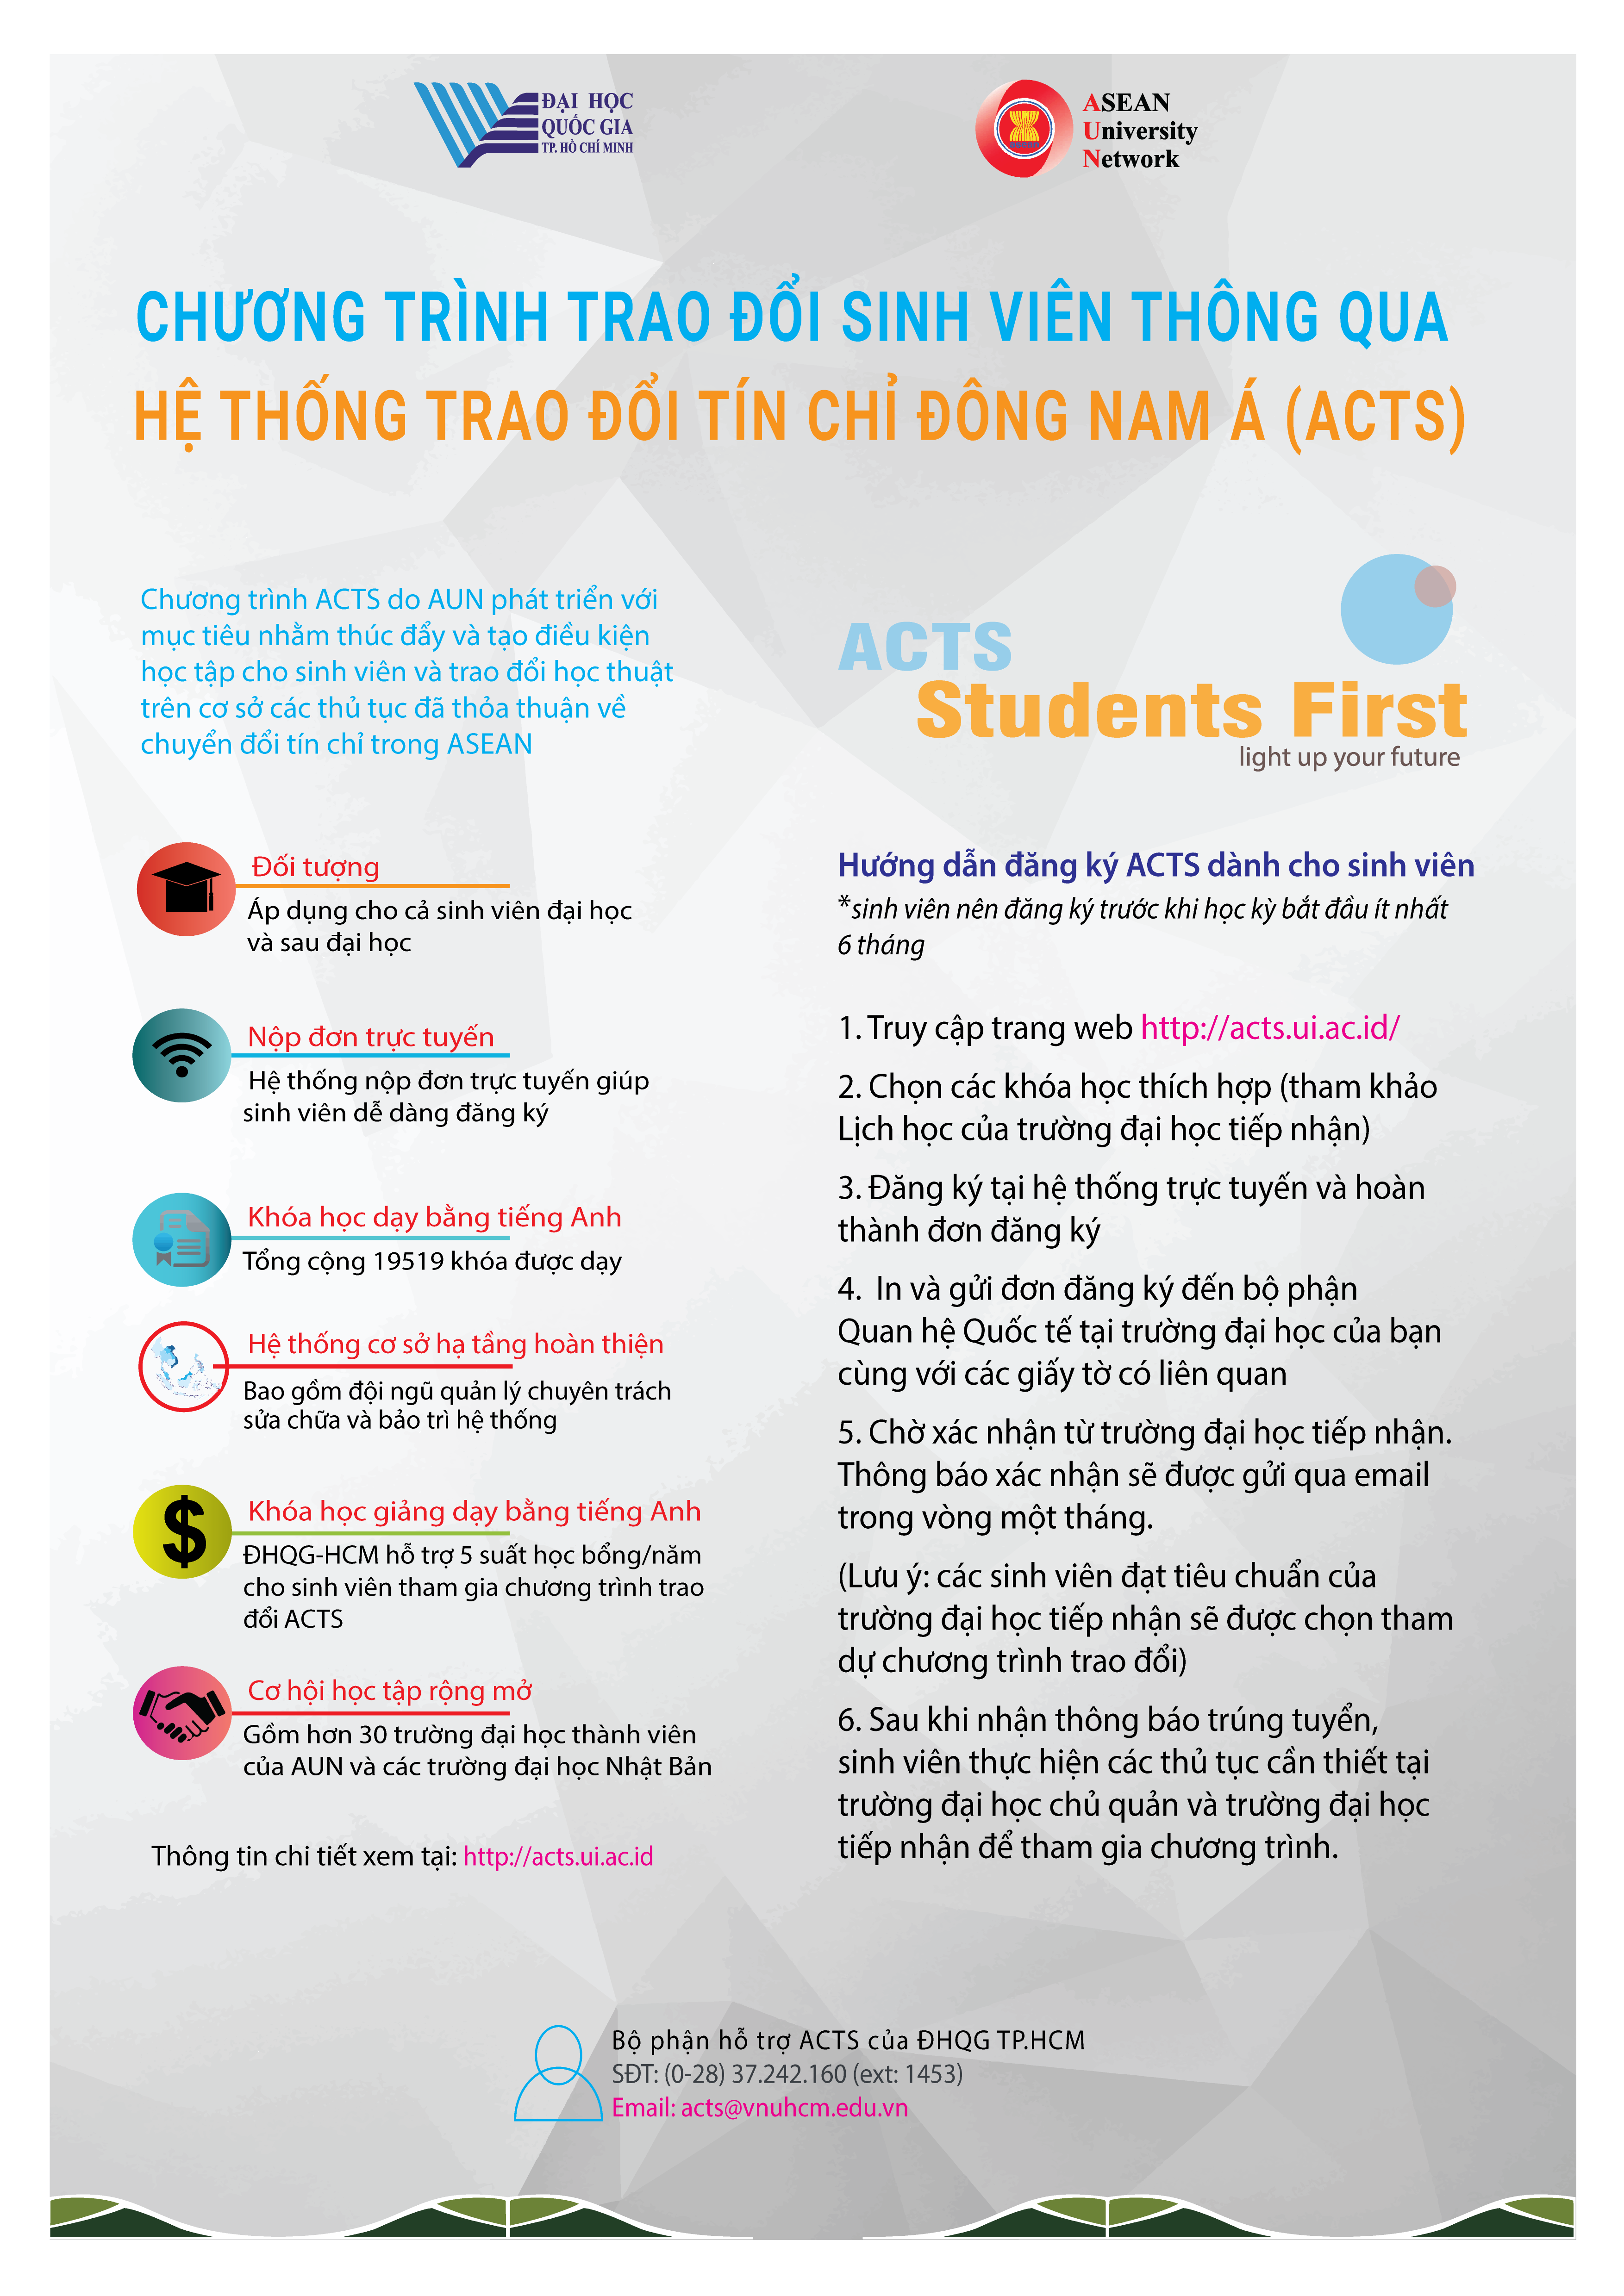 Buổi giới thiệu thông tin về Chương trình trao đổi sinh viên thông qua “Hệ thống trao đổi tín chỉ Đông Nam Á (ACTS)”